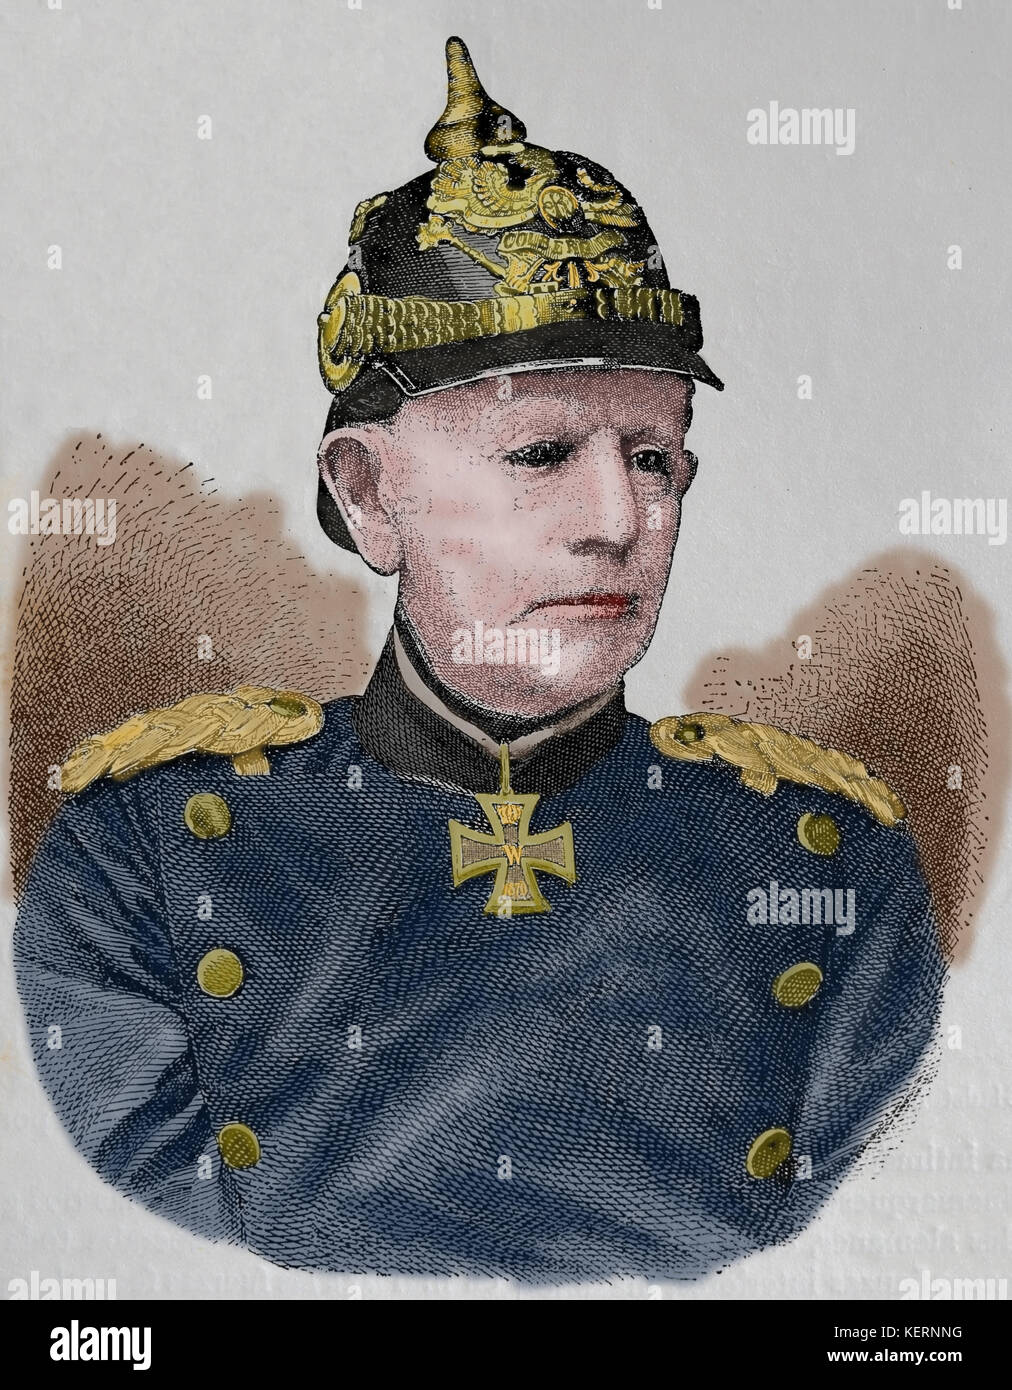 Helmuth von moltke der Ältere (1800-1891), deutscher Feldmarschall. Stabschef der preußischen Armee. Gravieren, nuestro Siglo, 1883, Barcelona, Spanien. Stockfoto